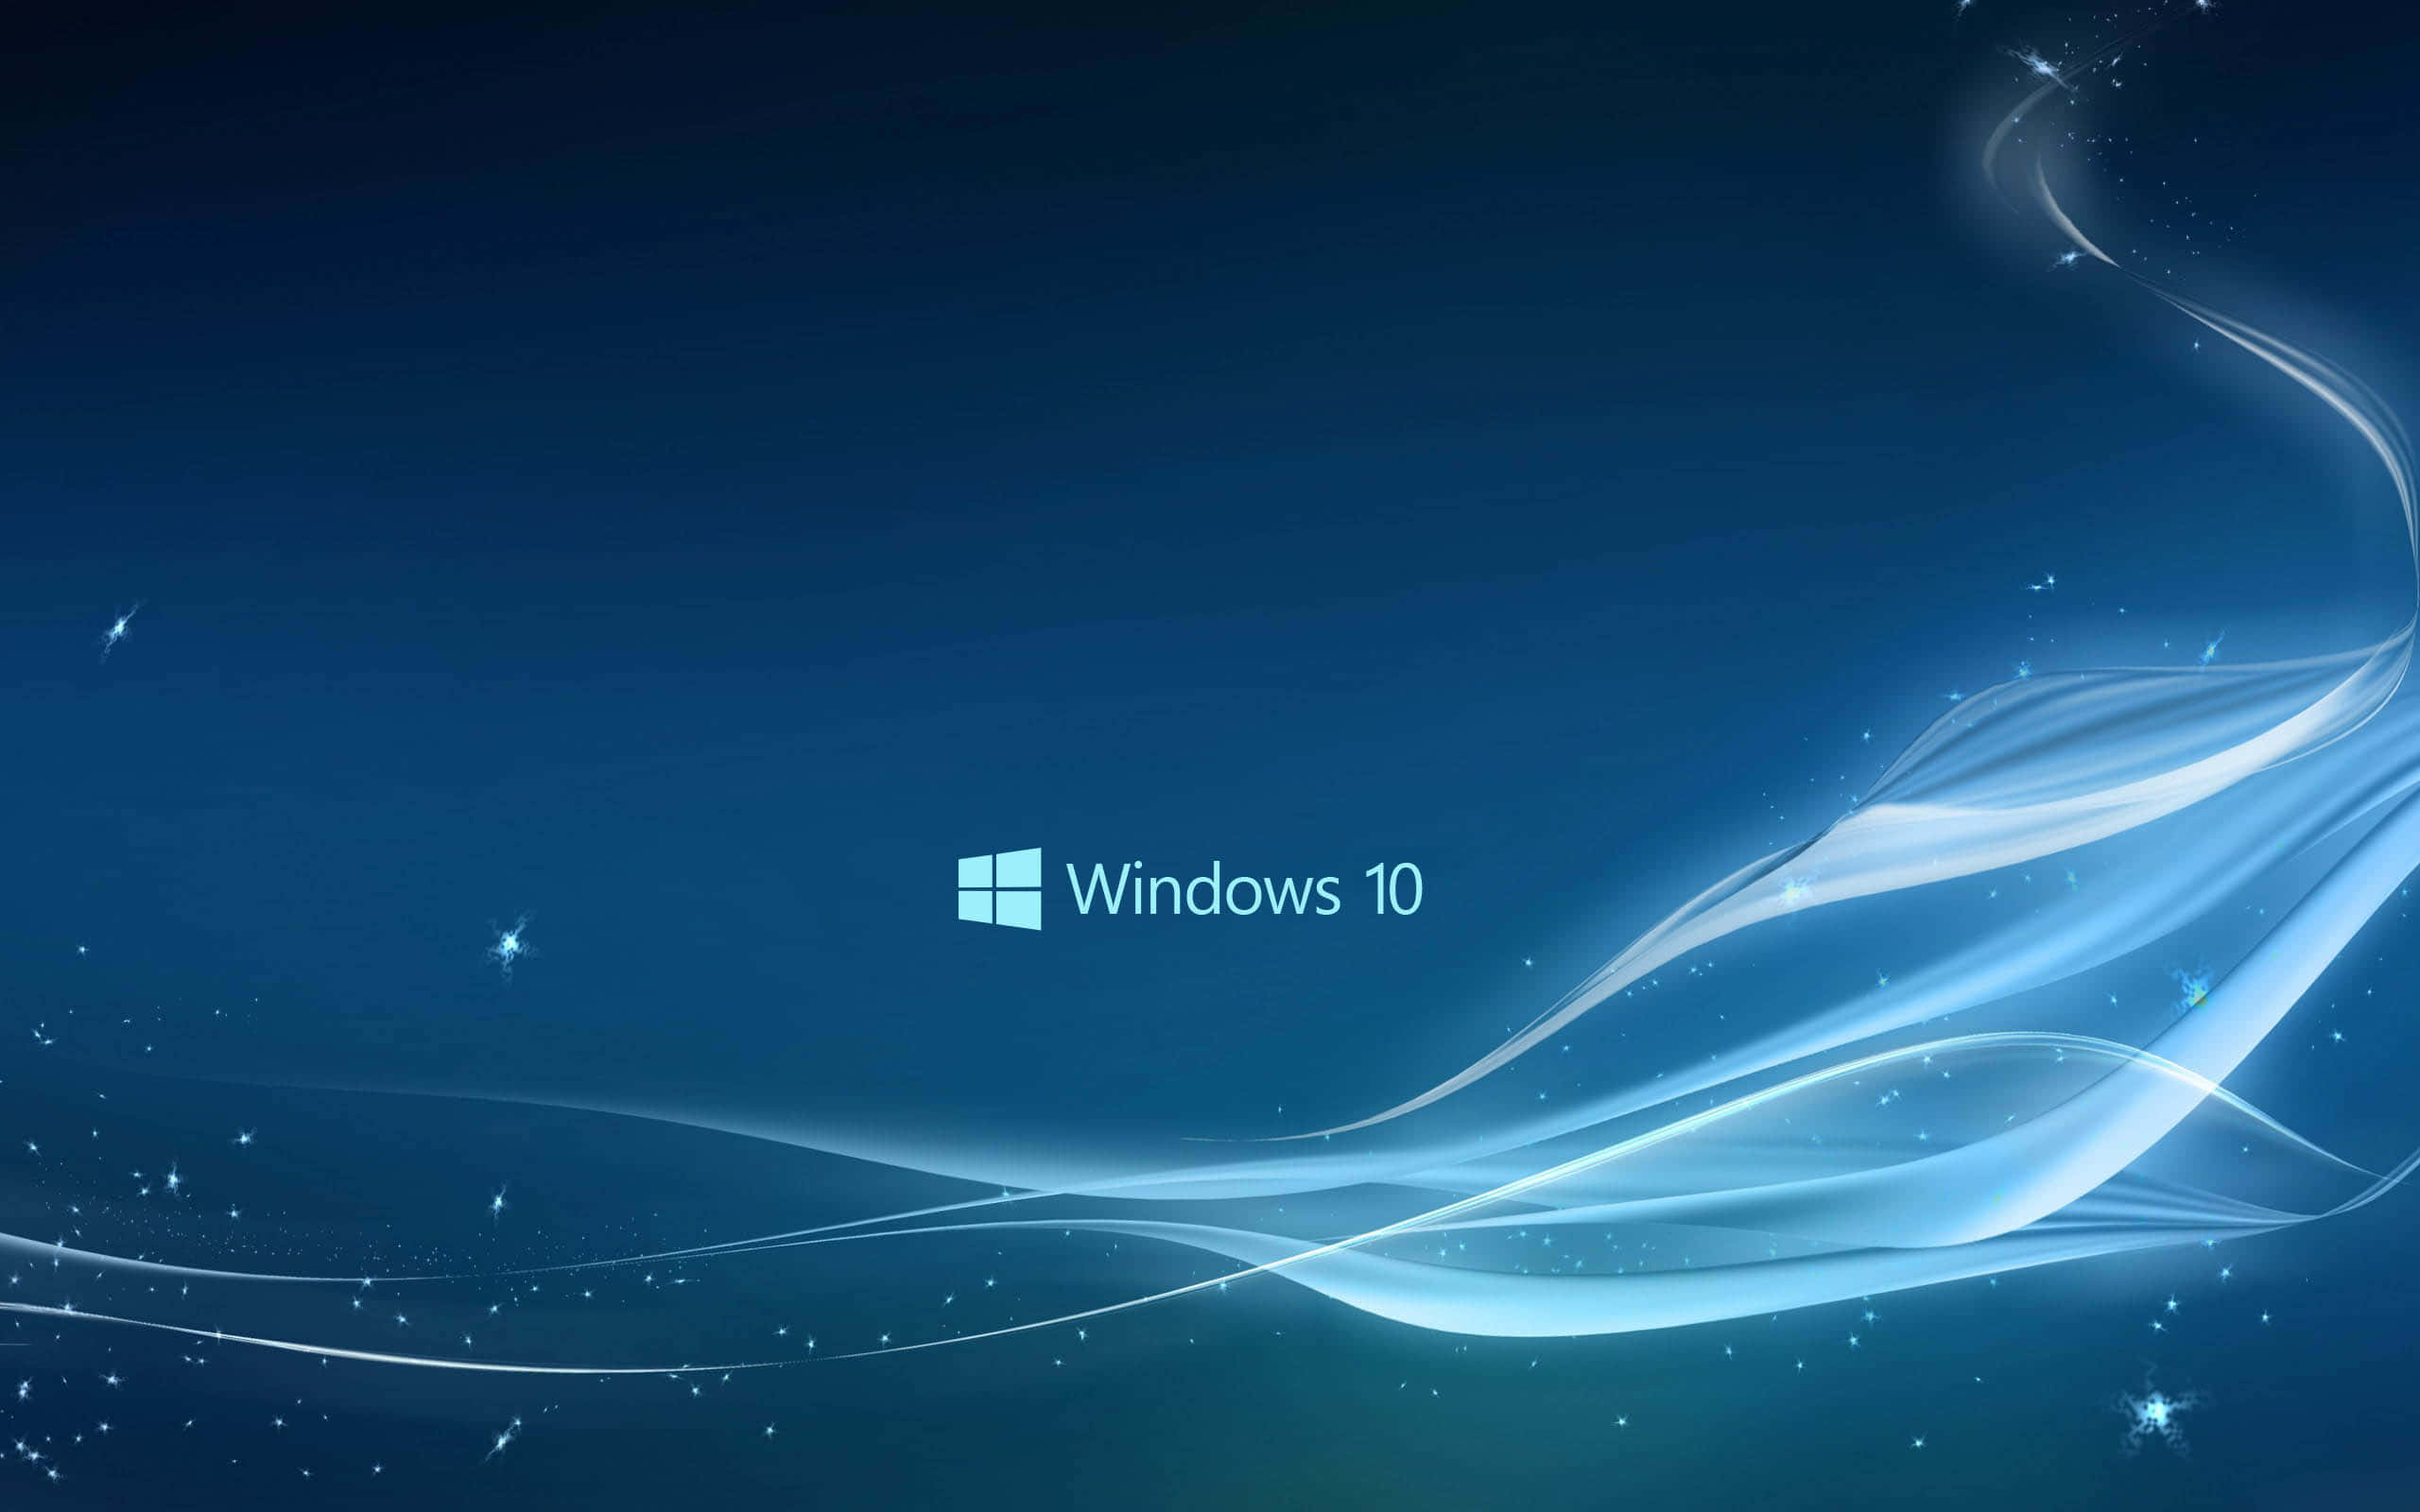 Mundobrillante Y Nuevo De Windows 10.